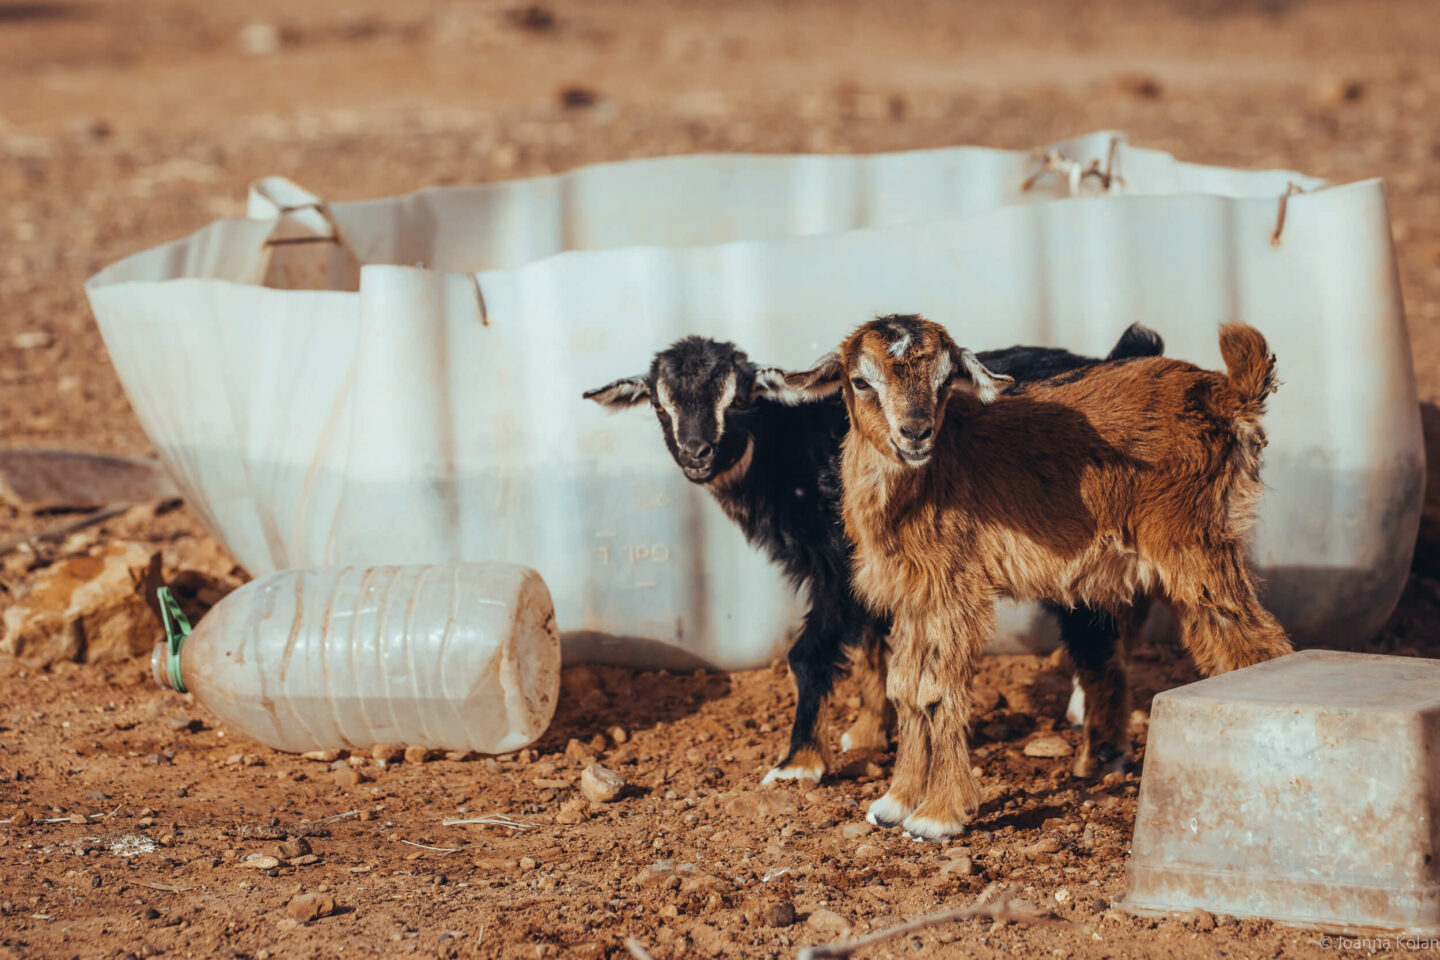 Goats in the Sahara desert, Morocco